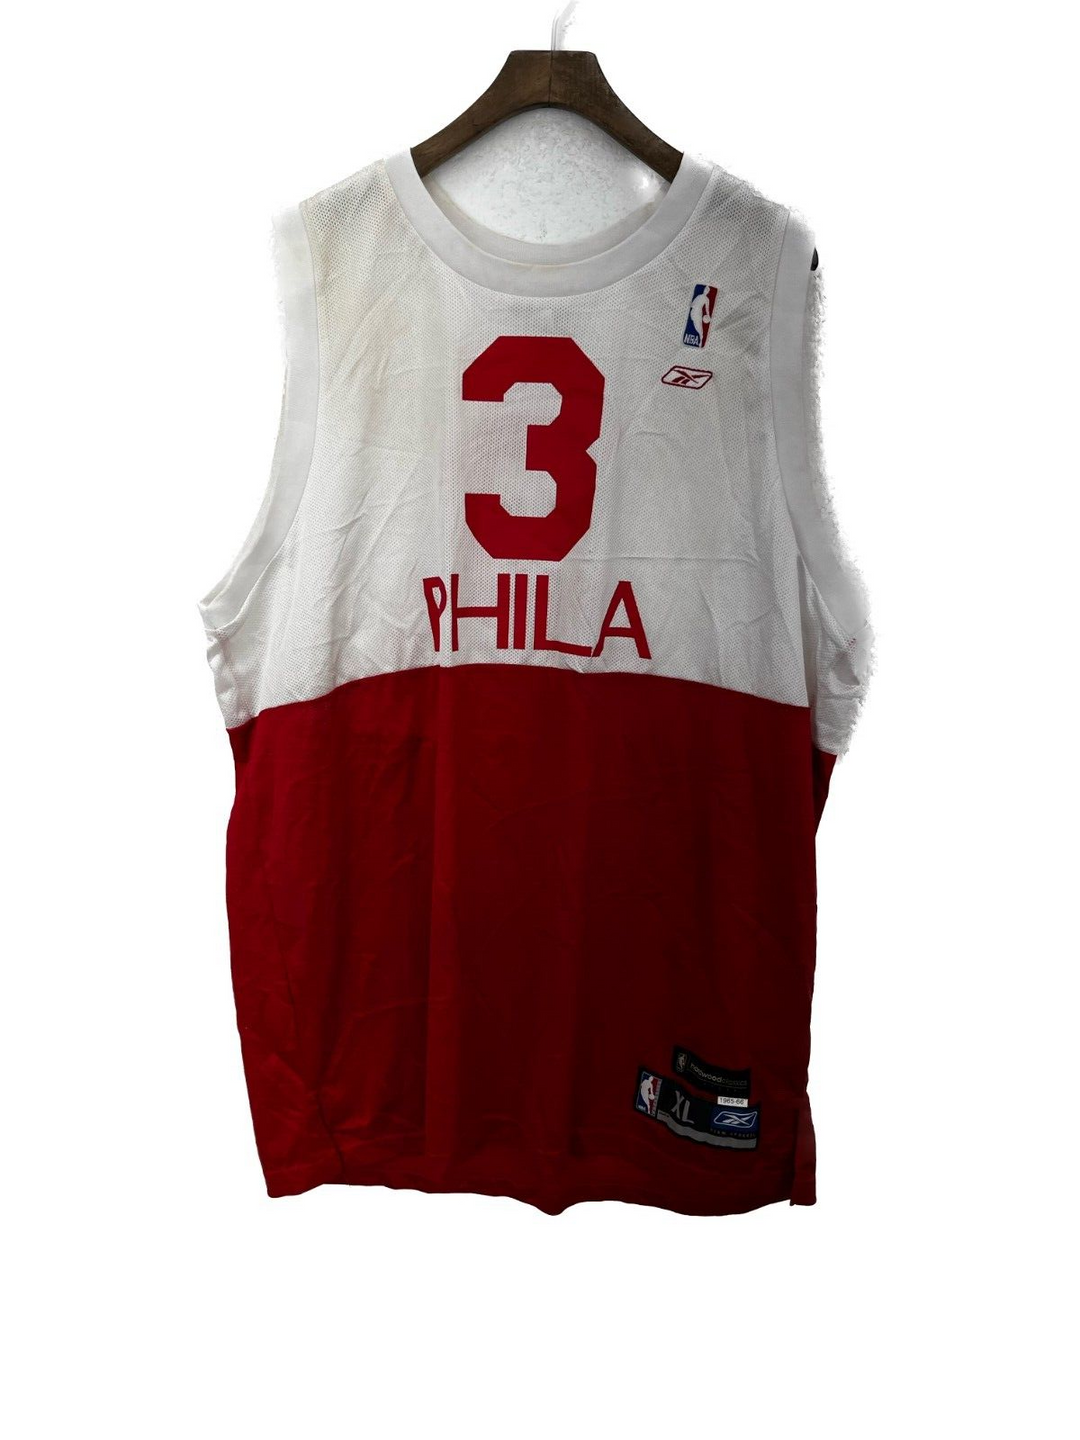 Vintage Reebok #3 Philadelphia 76ers Allen Iverson White NBA Jersey Size XL